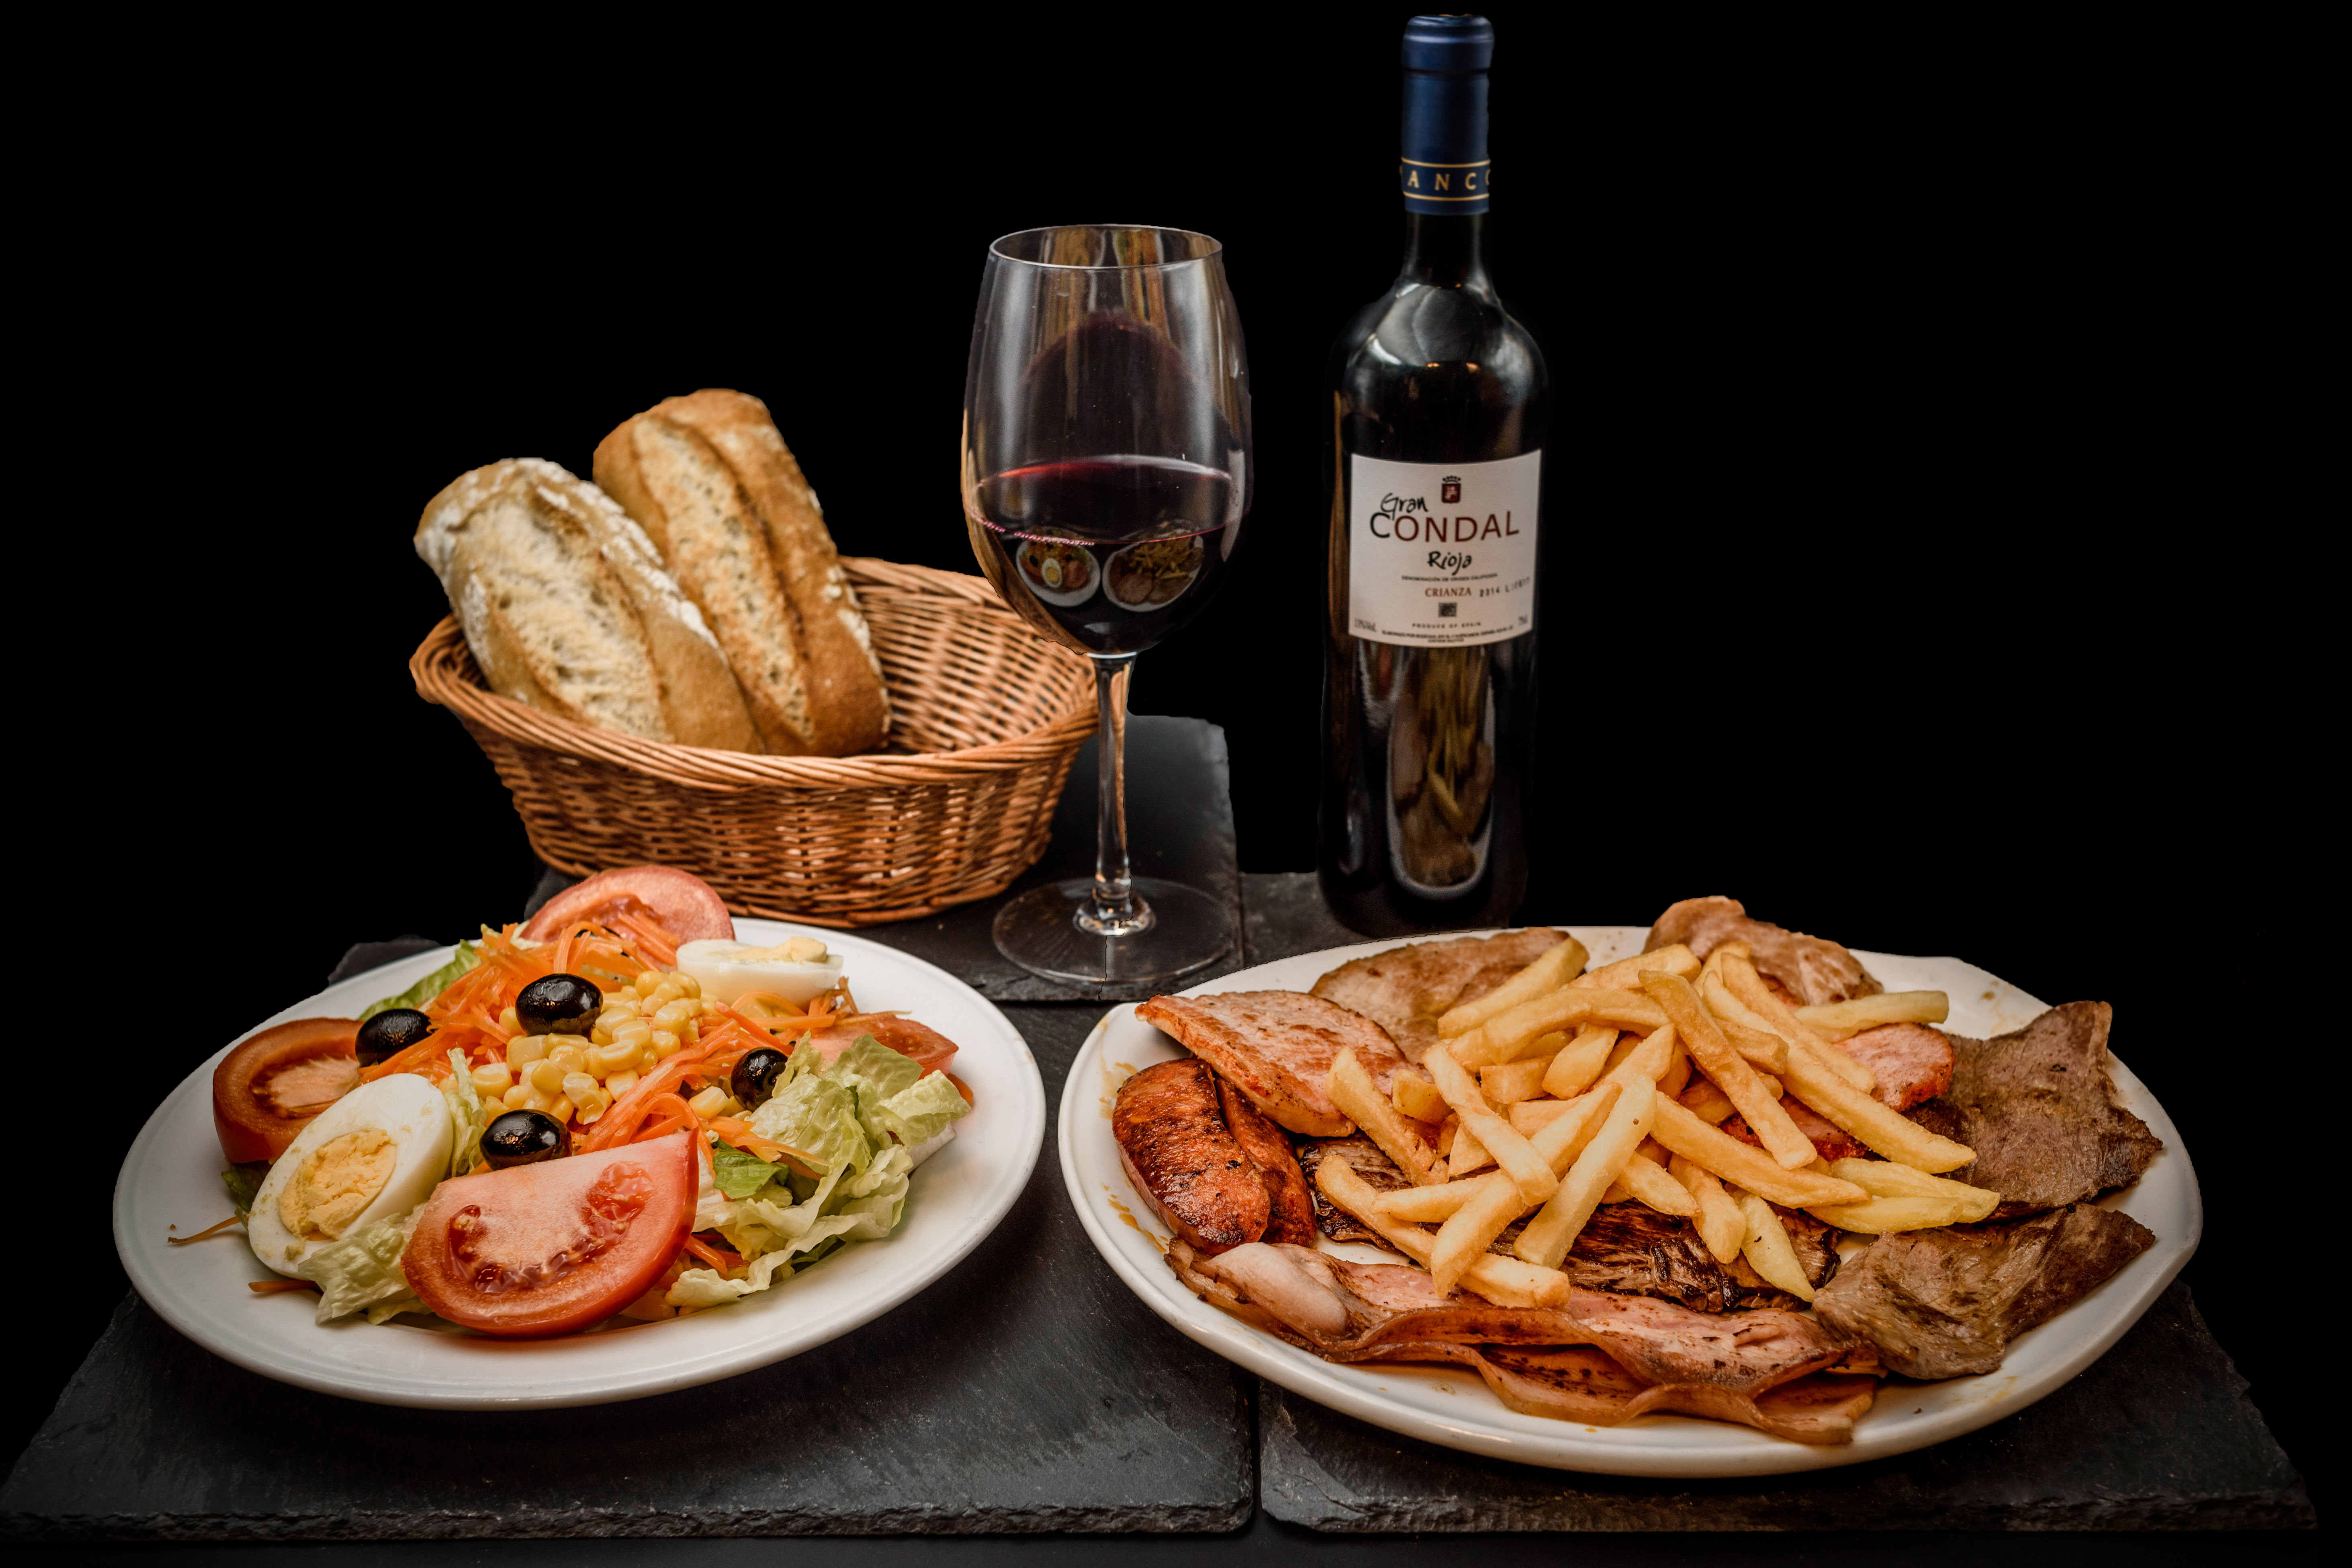 Parrillada de Carne y ensalada mixta, acompañado por una botella de vino de la casa Rioja o Ribera solo 19,45€. Disfruta de nuestras ofertas y promociones en el Museo del Jamón de Alcorcón. 